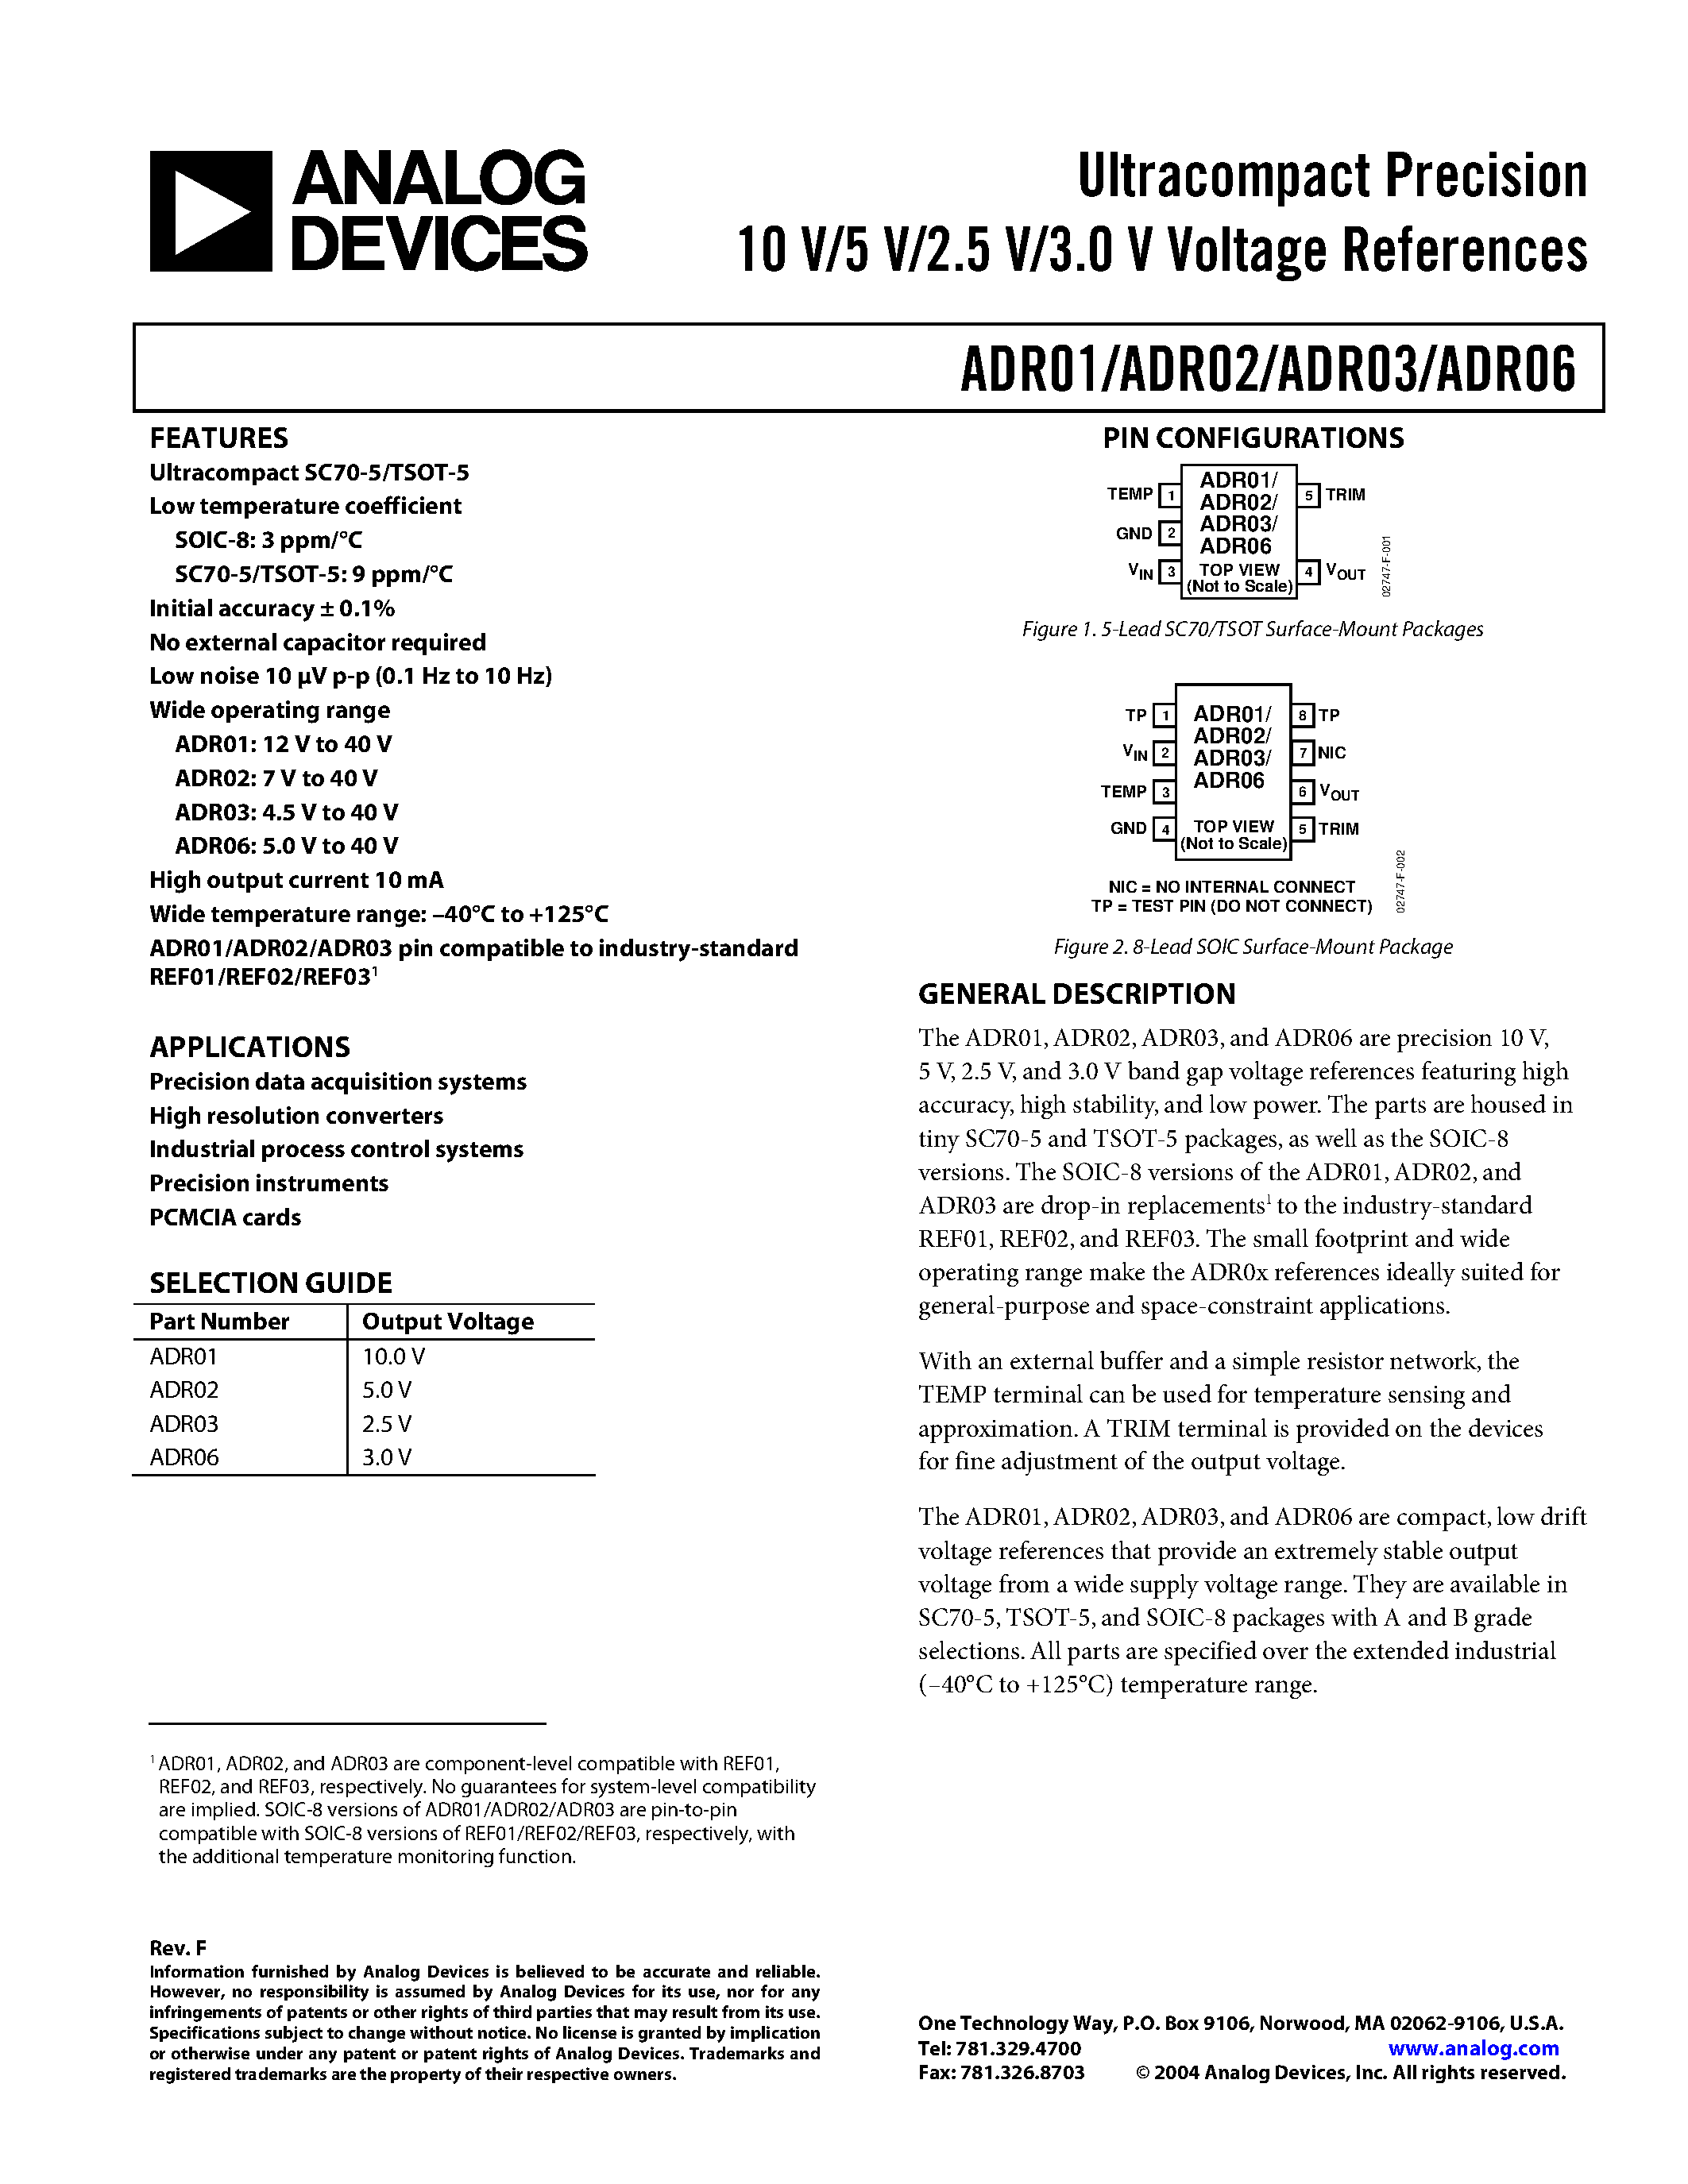 Даташит ADR01 - Ultracompact Precision10 V/5 V/2.5 V/3.0 V Voltage References страница 1